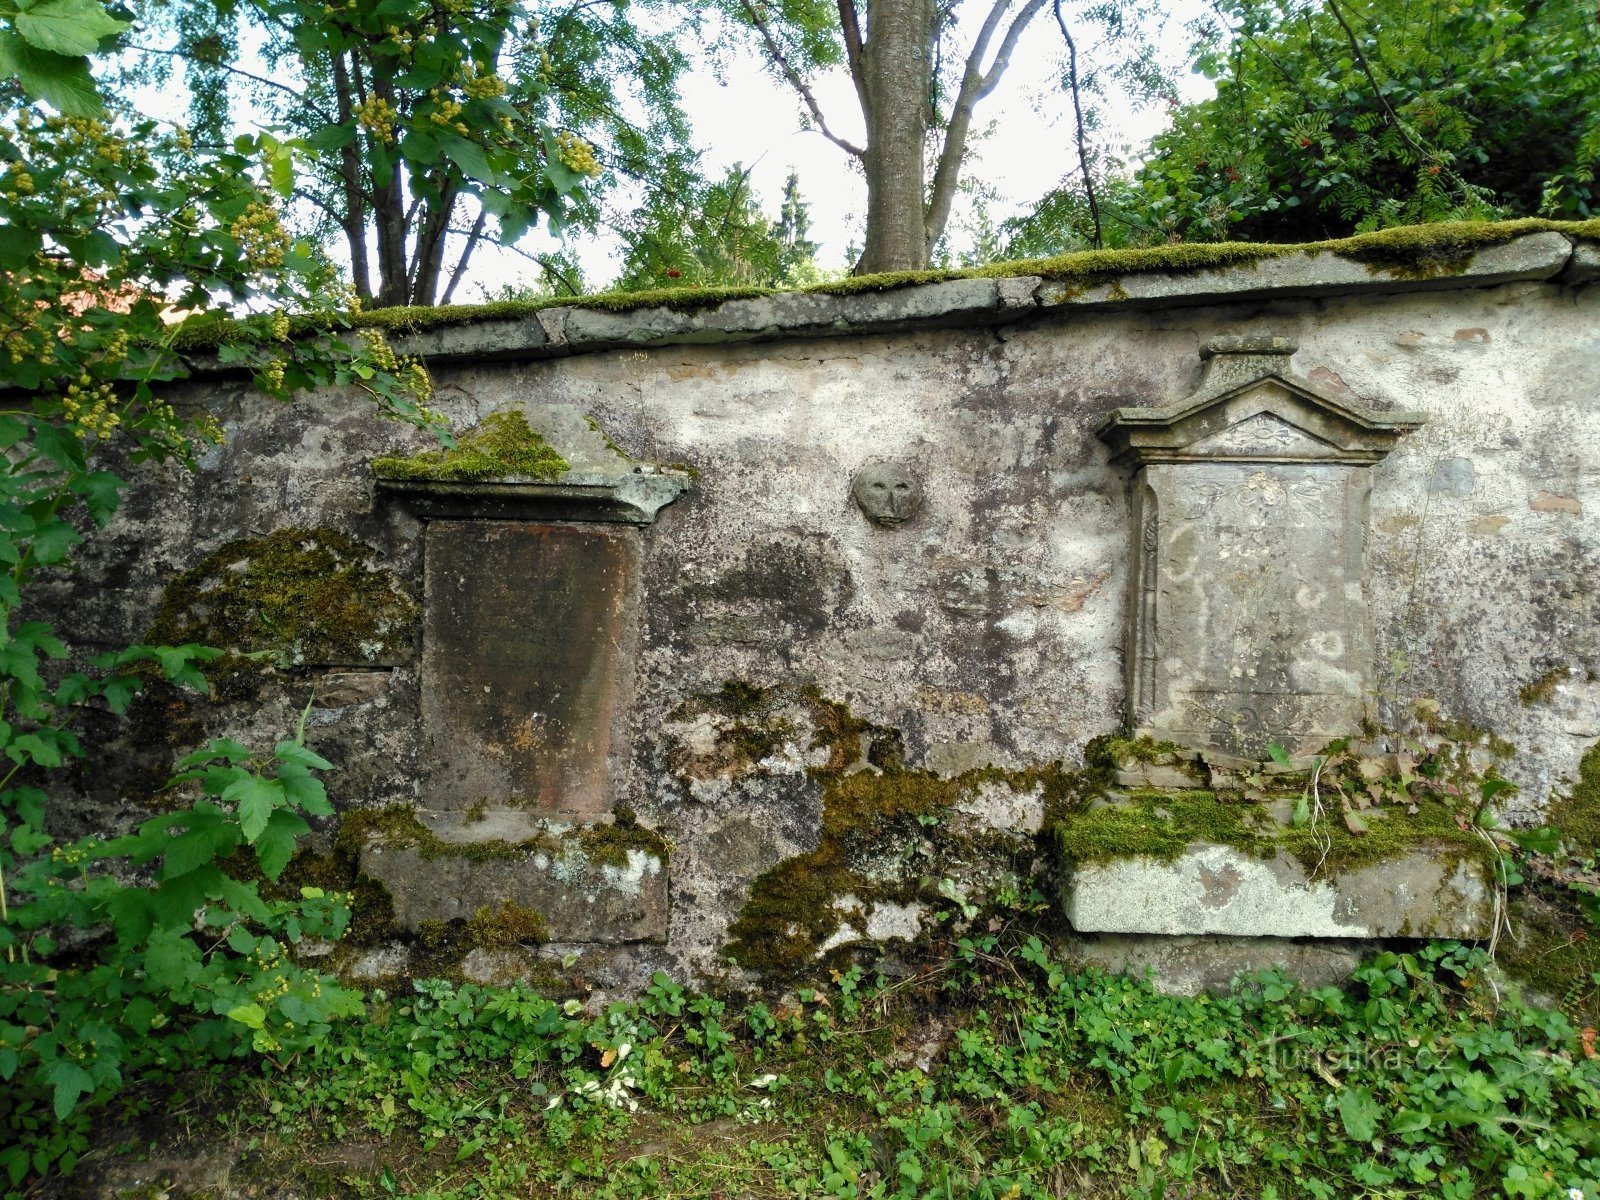 parede do cemitério com cabeça de pedra esculpida.